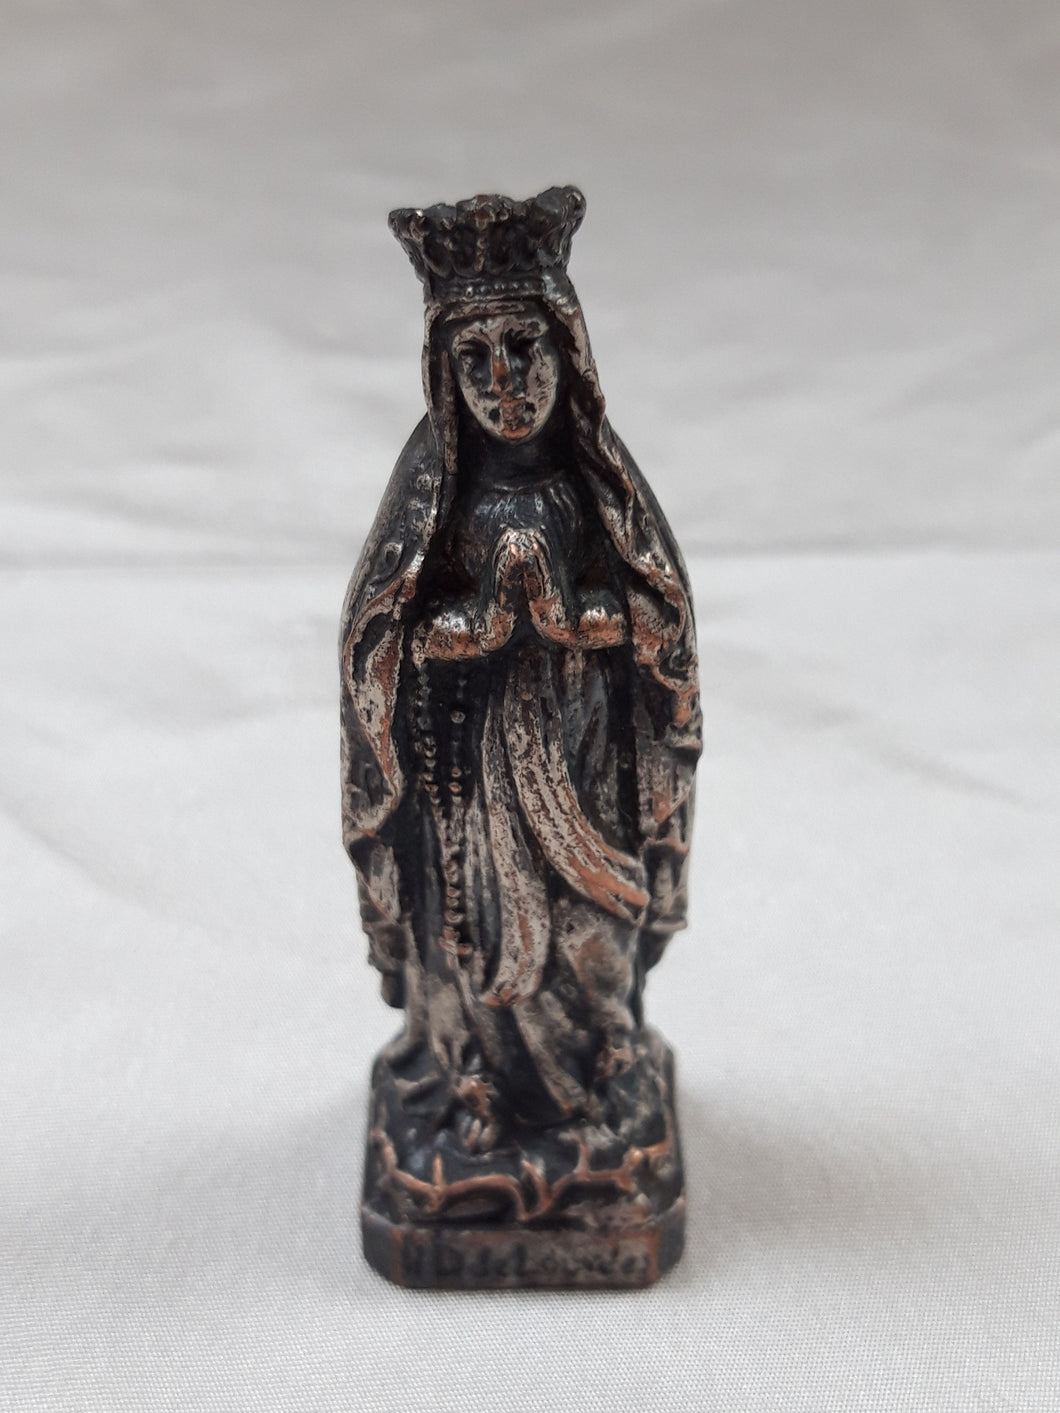 Oud beeldje van Onze Lieve Vrouw van Lourdes in zilver metaal